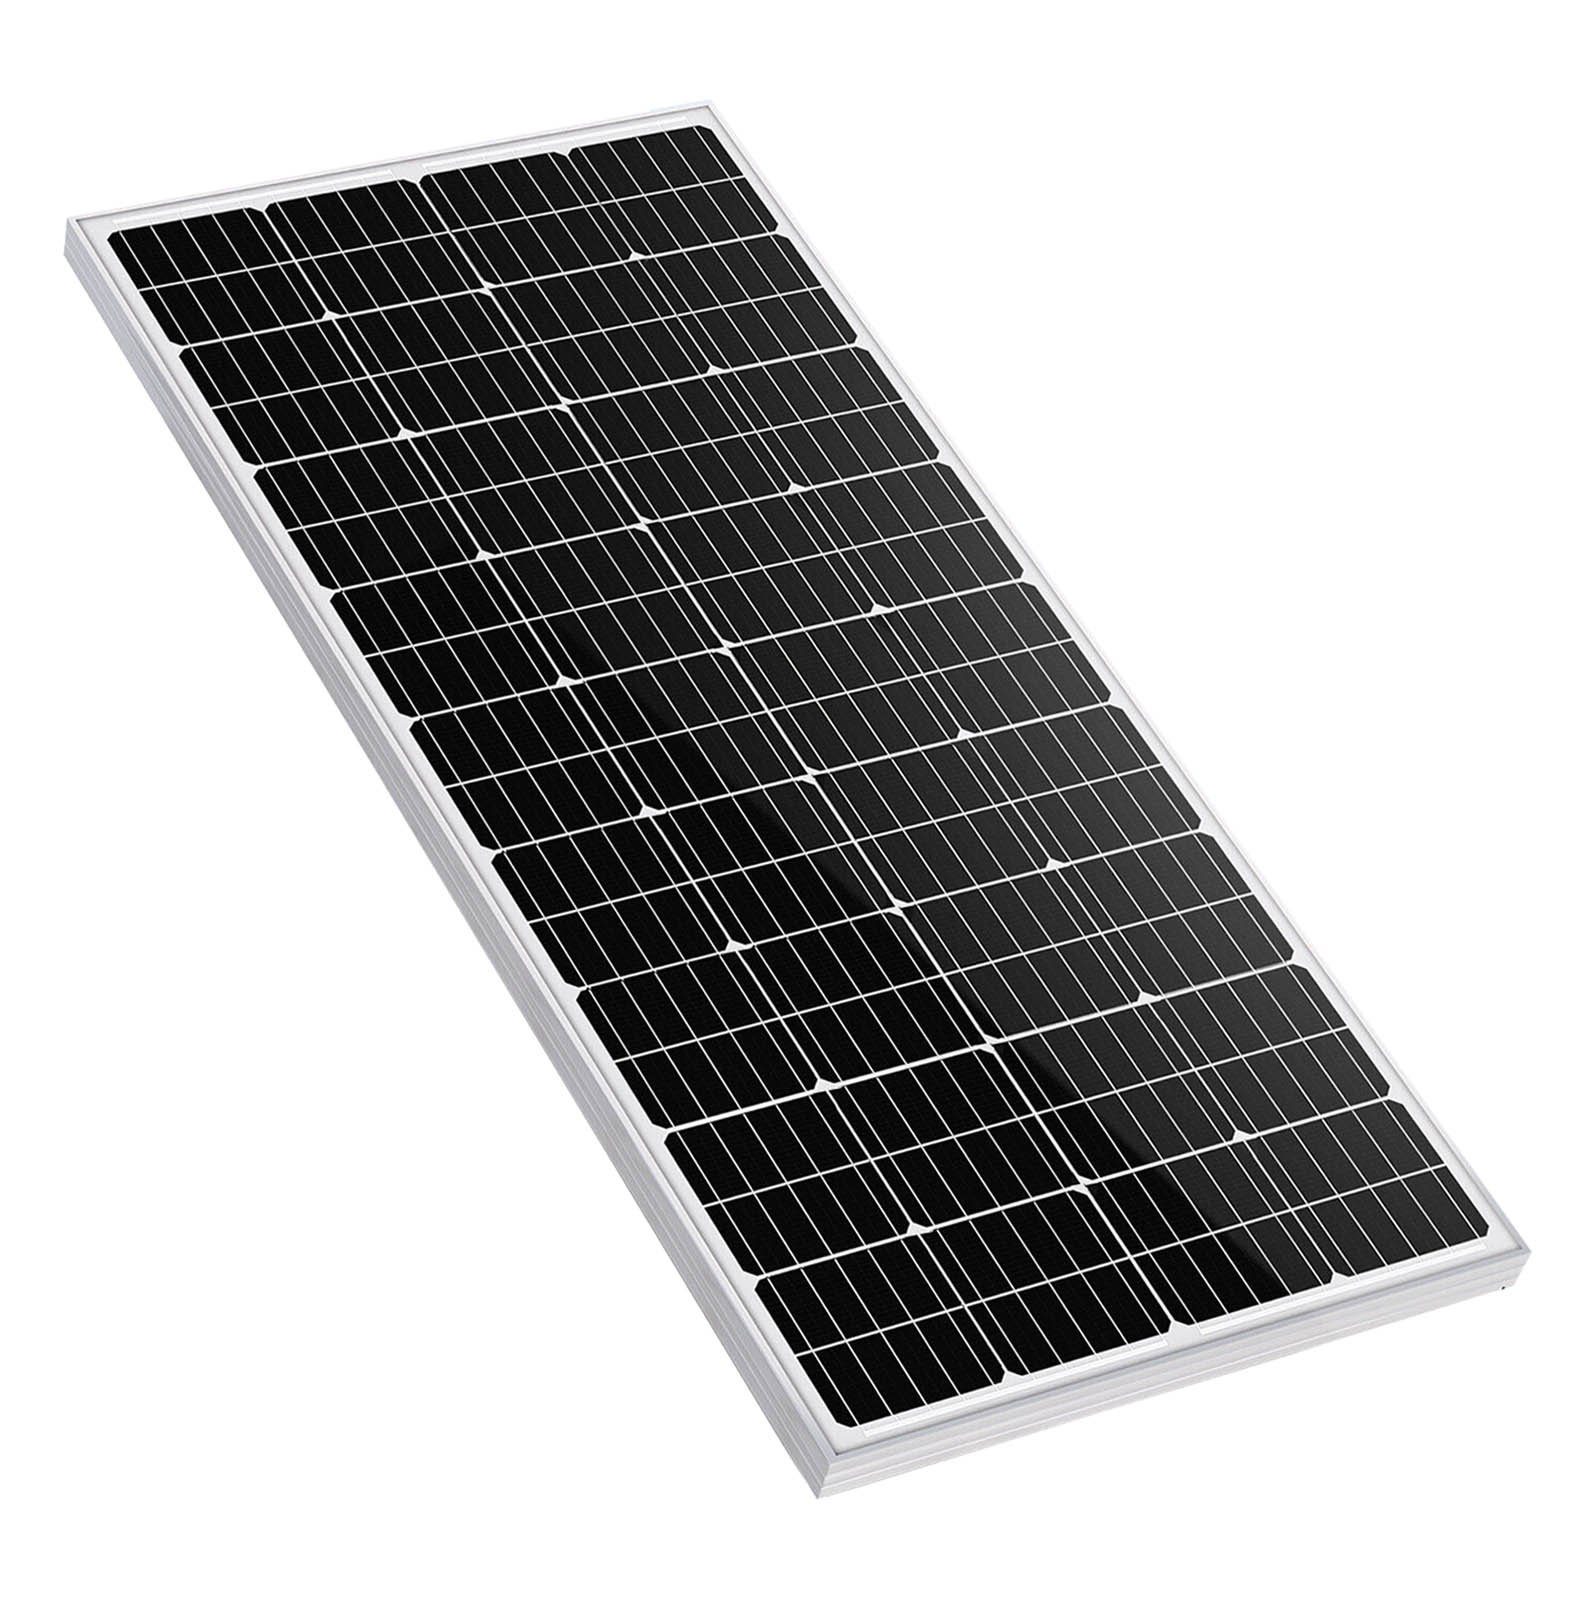 150W Mono Solarmodul Solarmodul GLIESE Solarpanel 450W